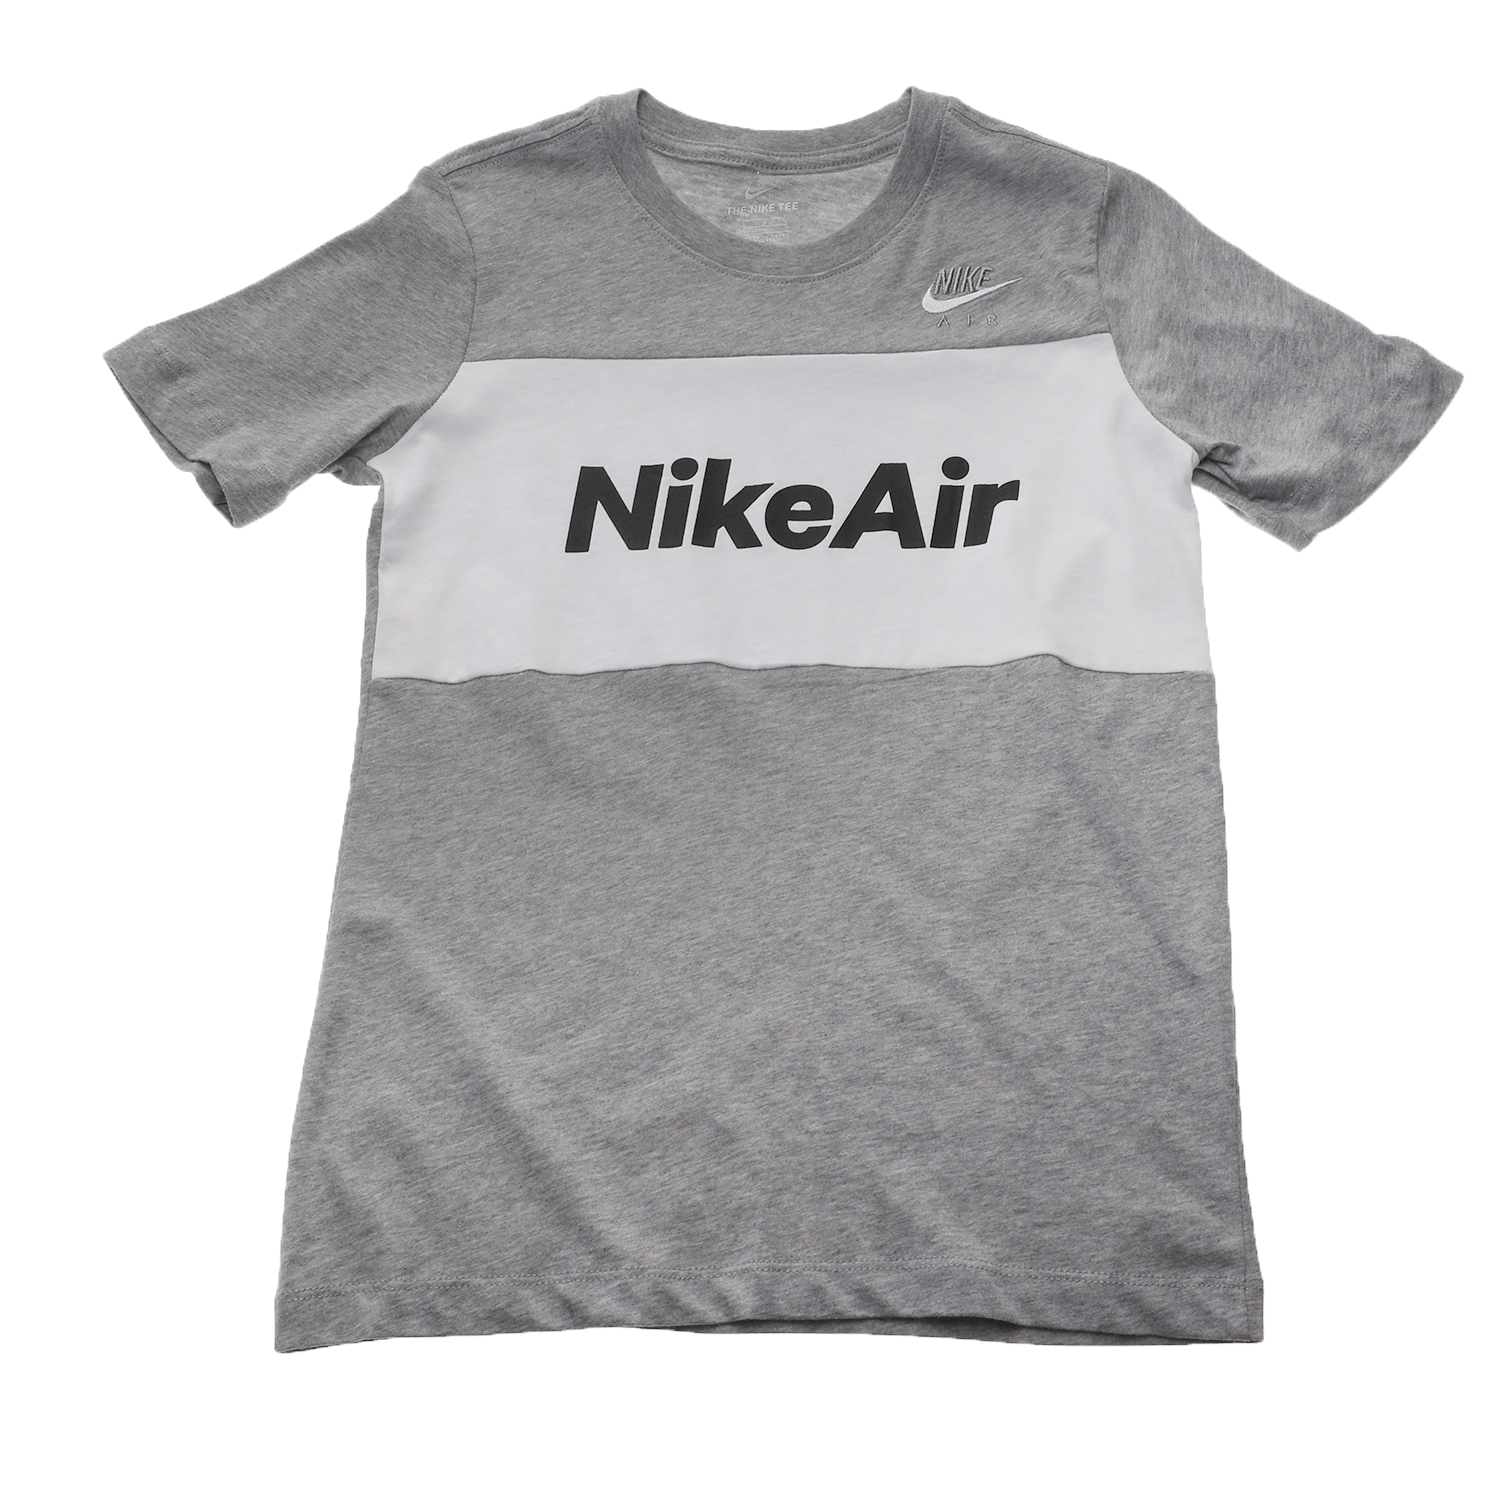 Παιδικά/Boys/Ρούχα/Αθλητικά NIKE - Παιδική κοντομάνικη μπλούζα NIKE SW NIKE AIR TEE γκρι